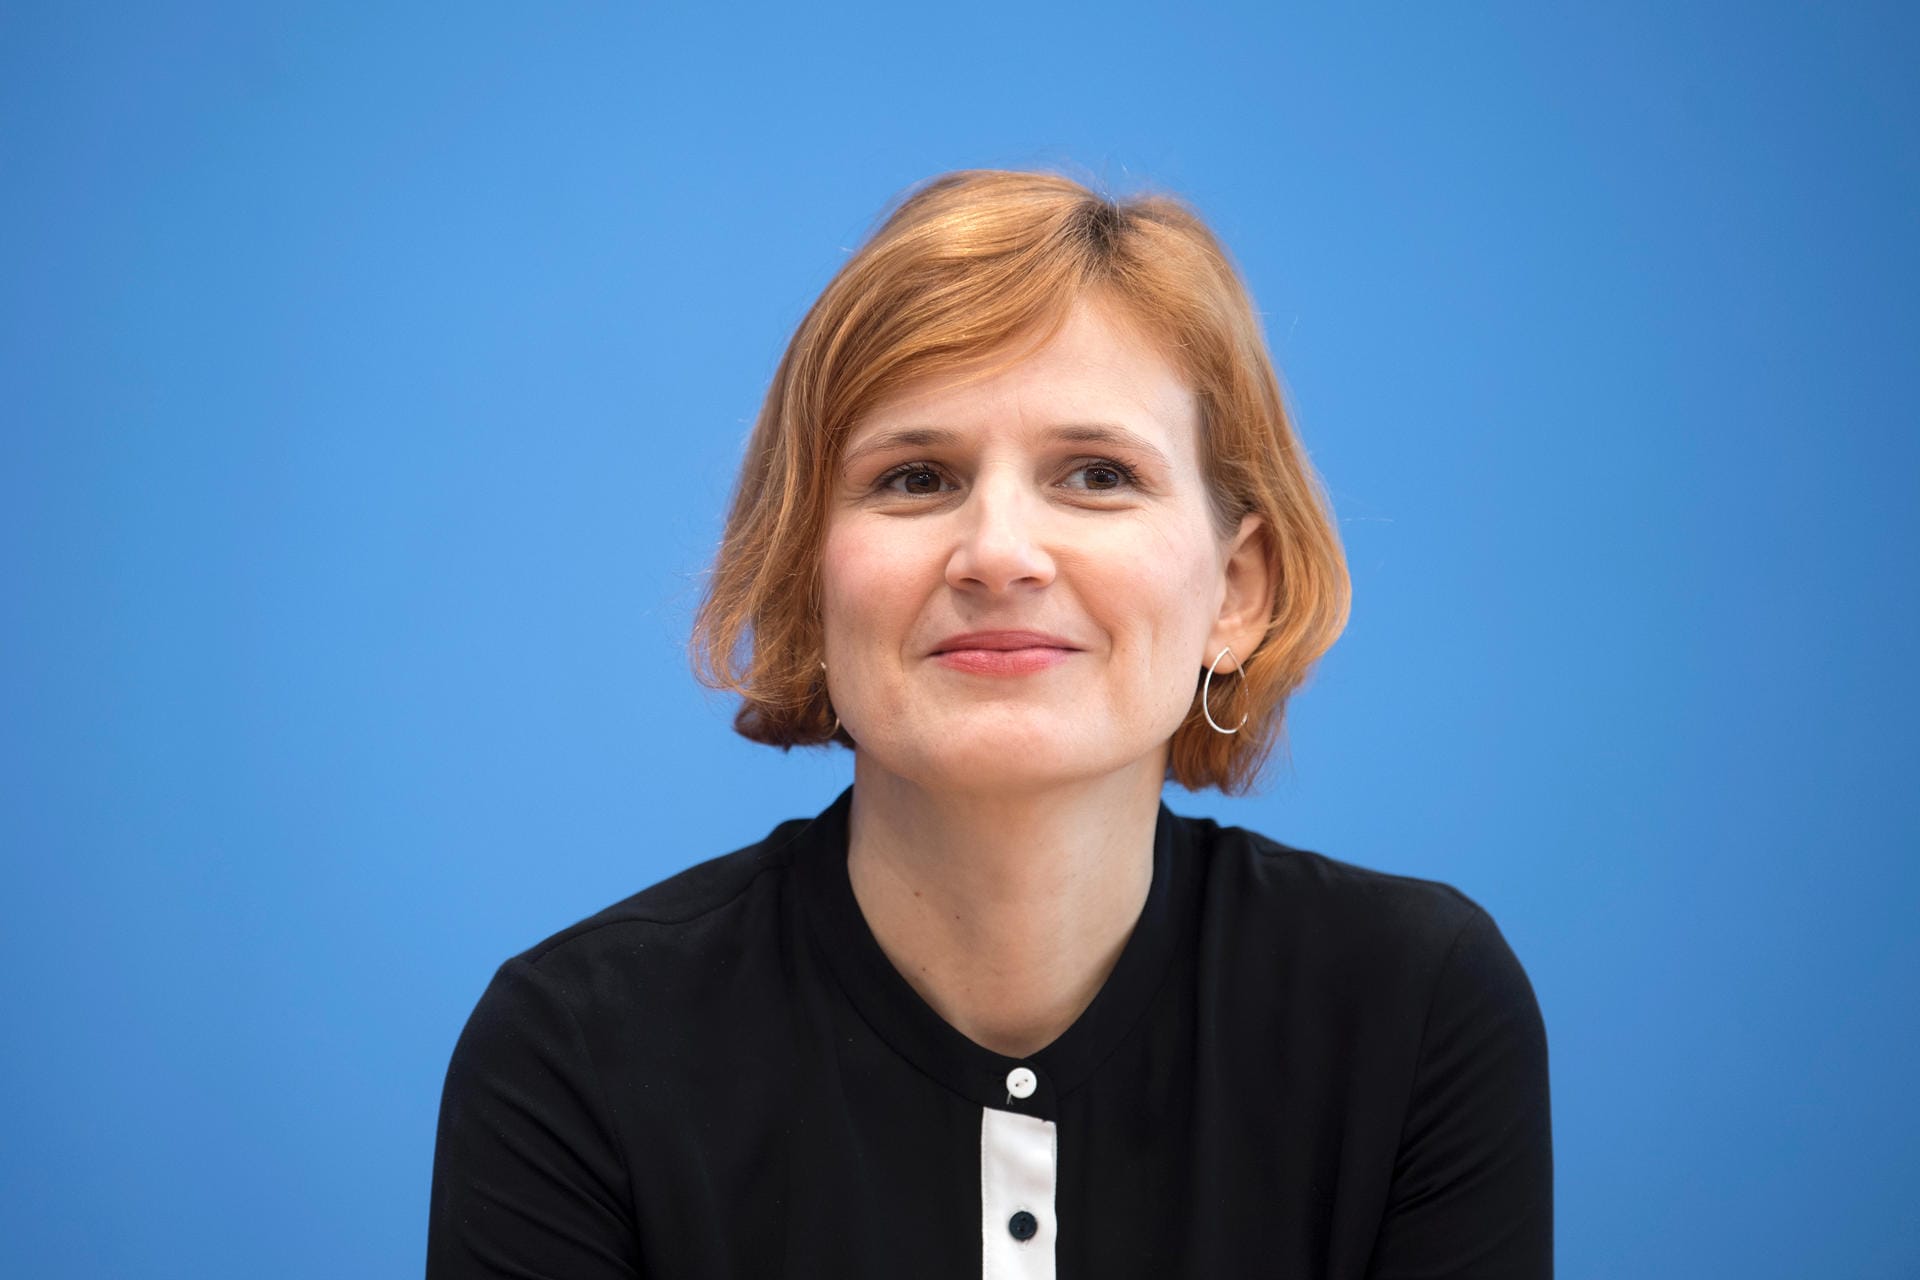 Linken-Chefin Katja Kipping sieht neue Chancen für linke Mehrheiten. Deutschland brauche eine sozial-ökonomische Wende und das funktioniere nur mit Mehrheiten links der Union. "Dafür braucht es sowohl eine schwungvolle SPD als auch eine starke Linke."